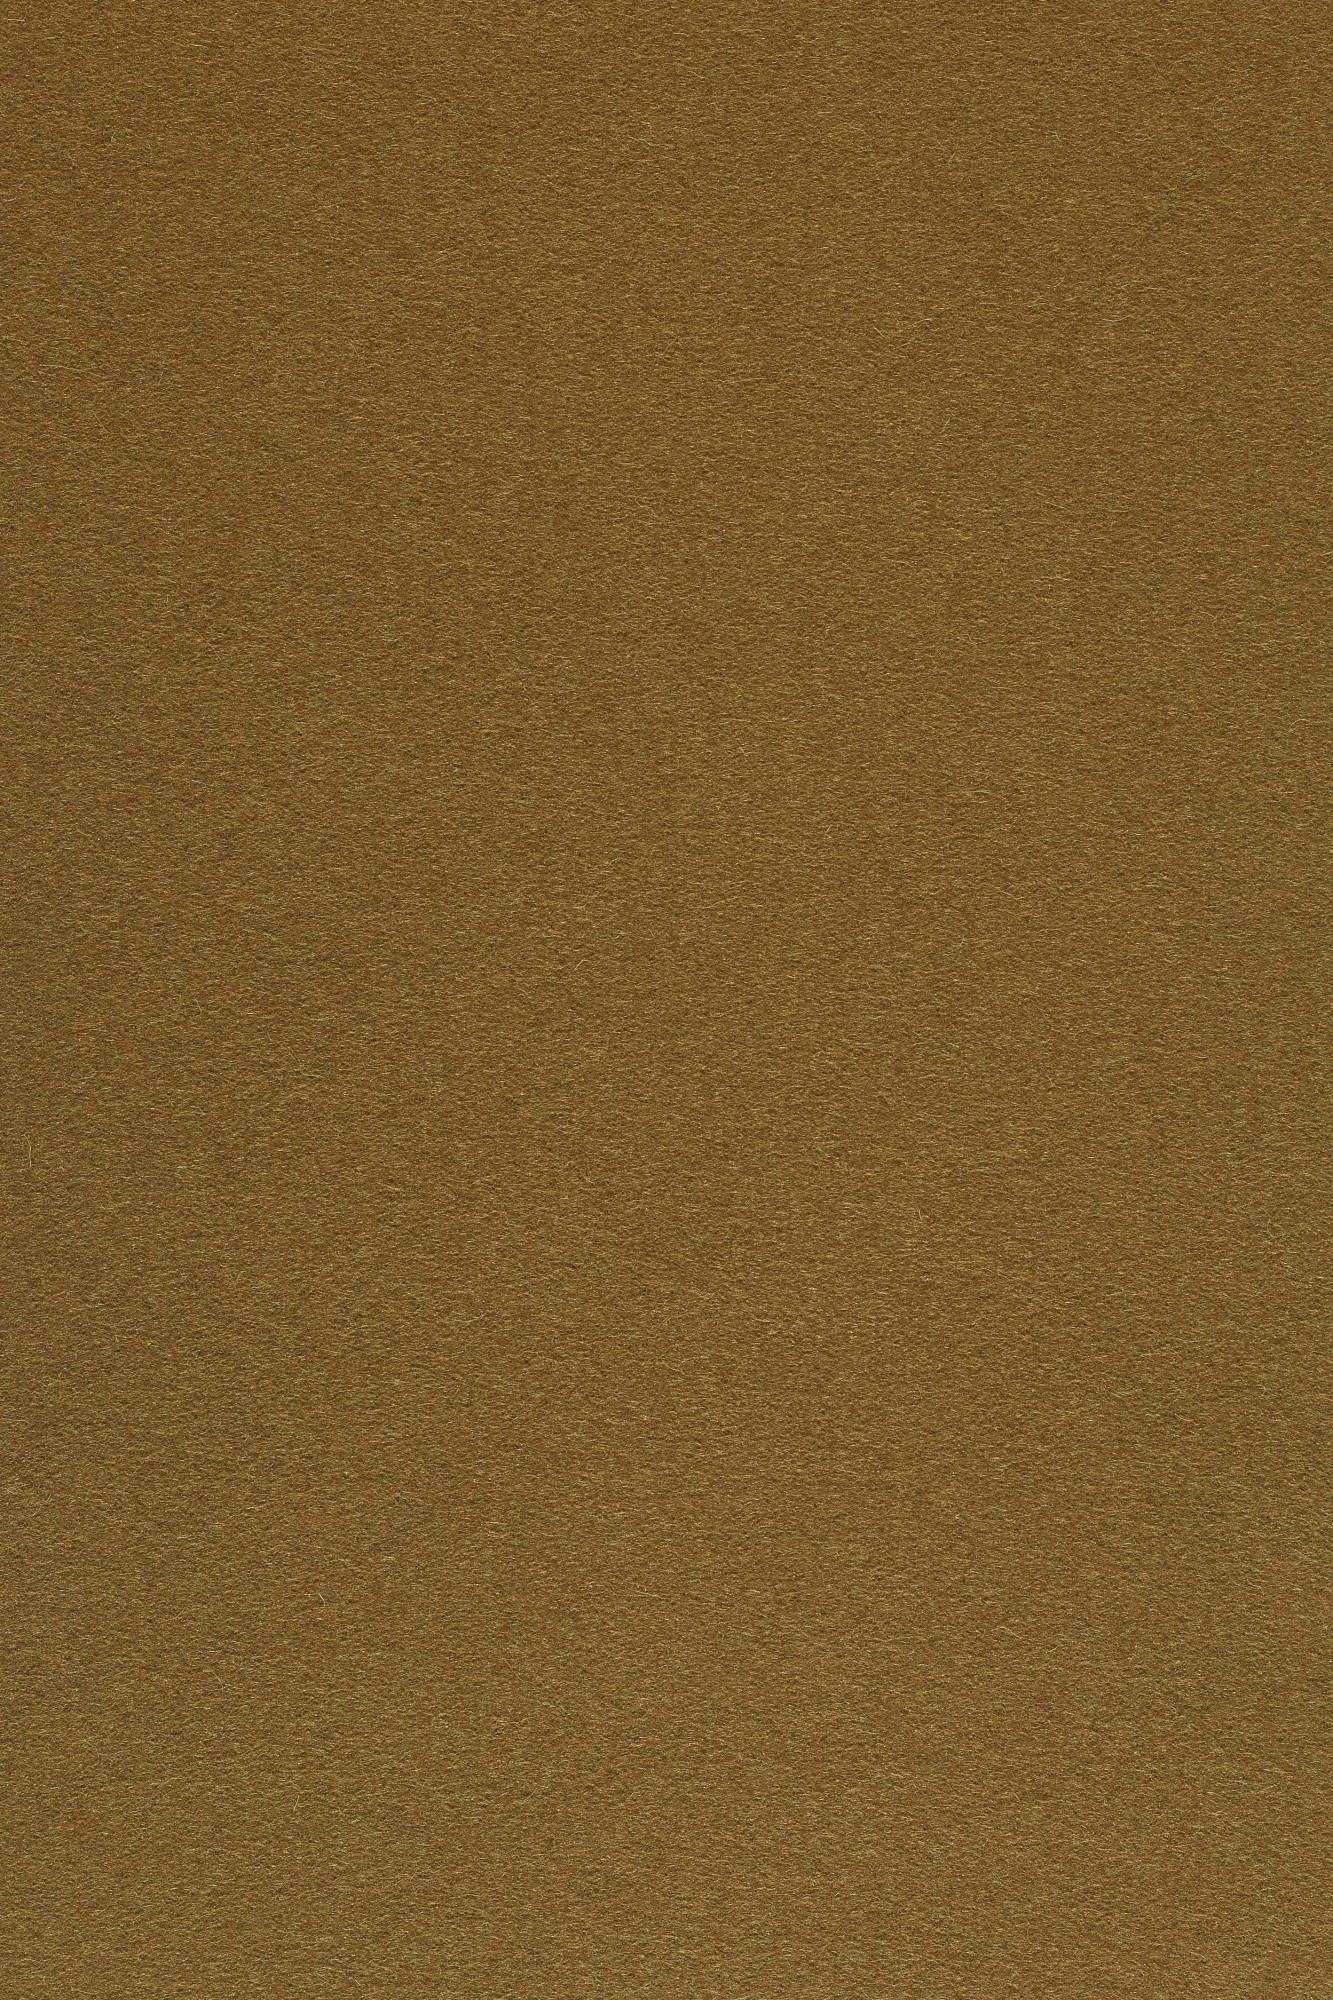 Fabric sample Divina 3 346 brown